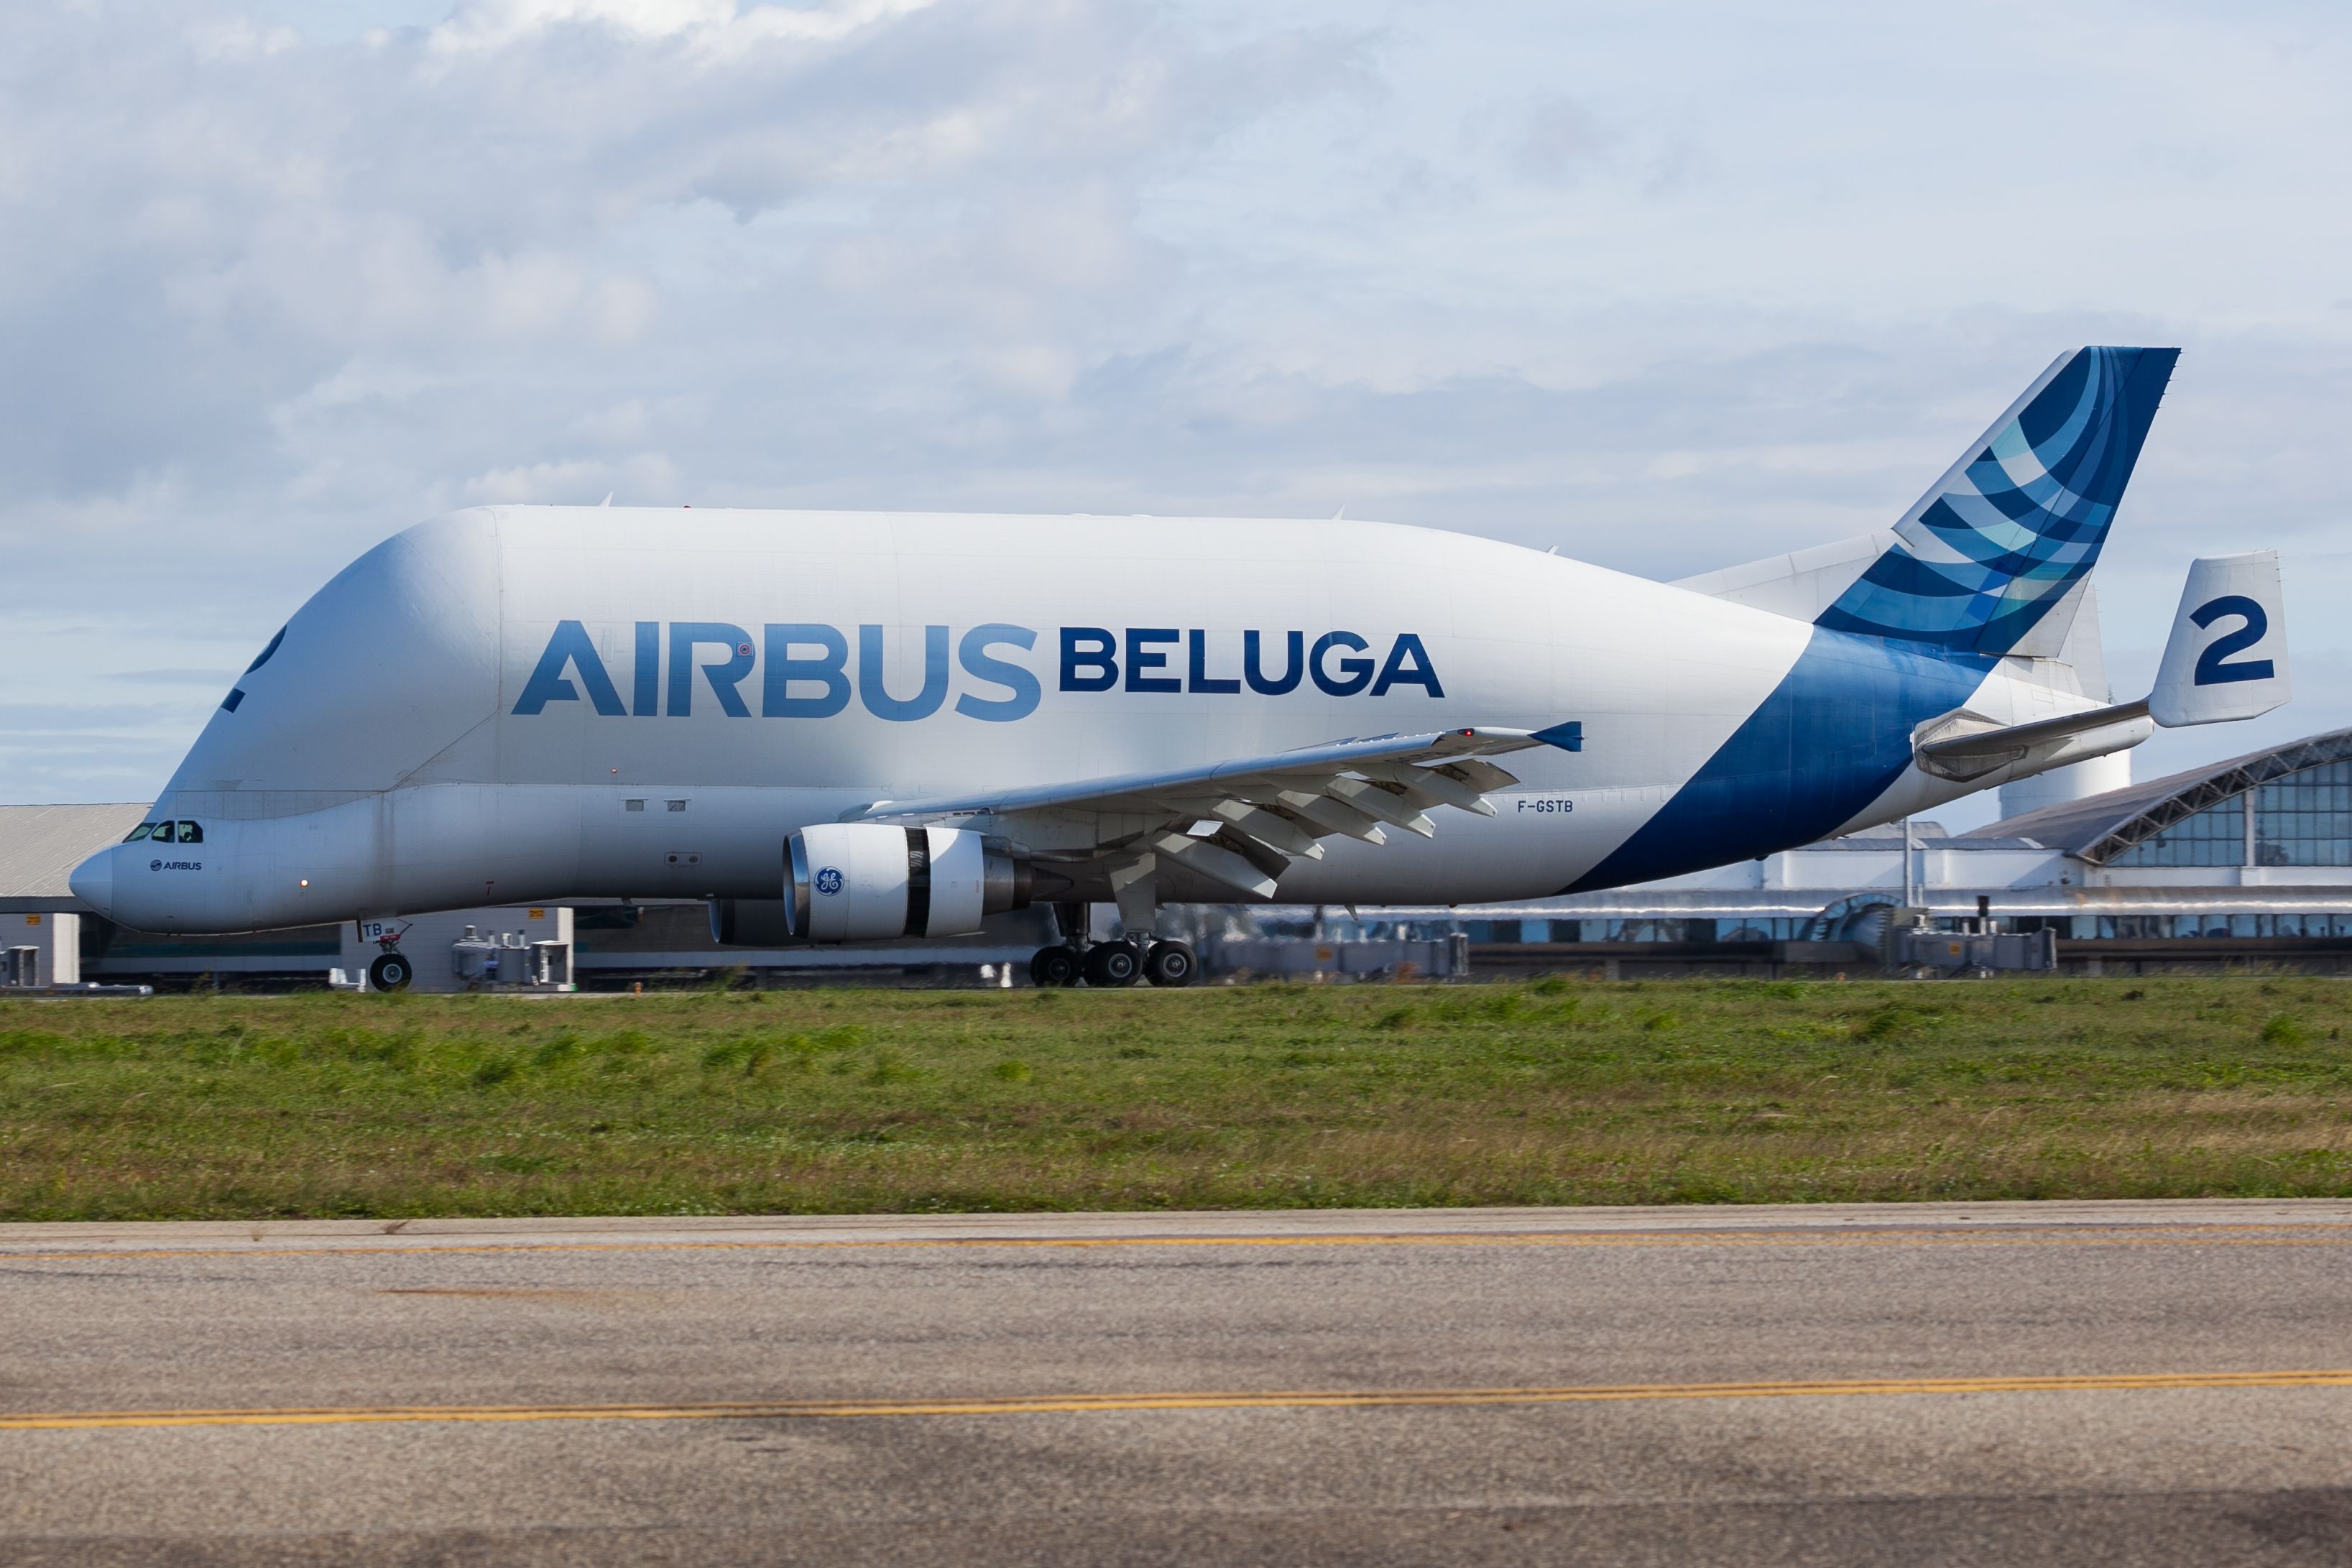 Airbus Beluga in Brazil. 